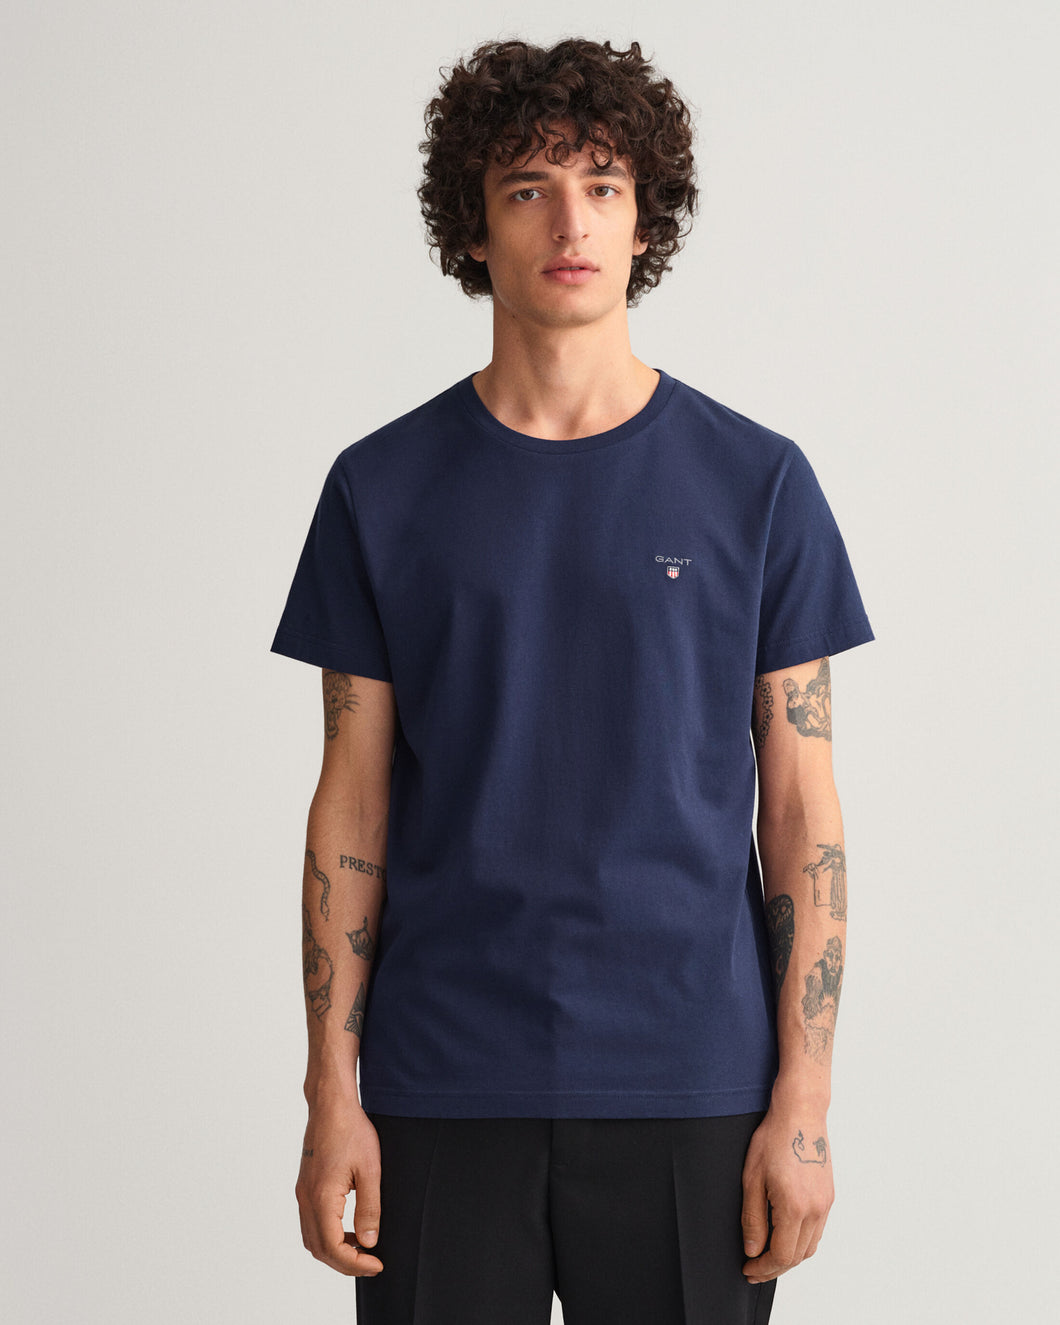 GANT - Original SS T-Shirt, Evening Blue